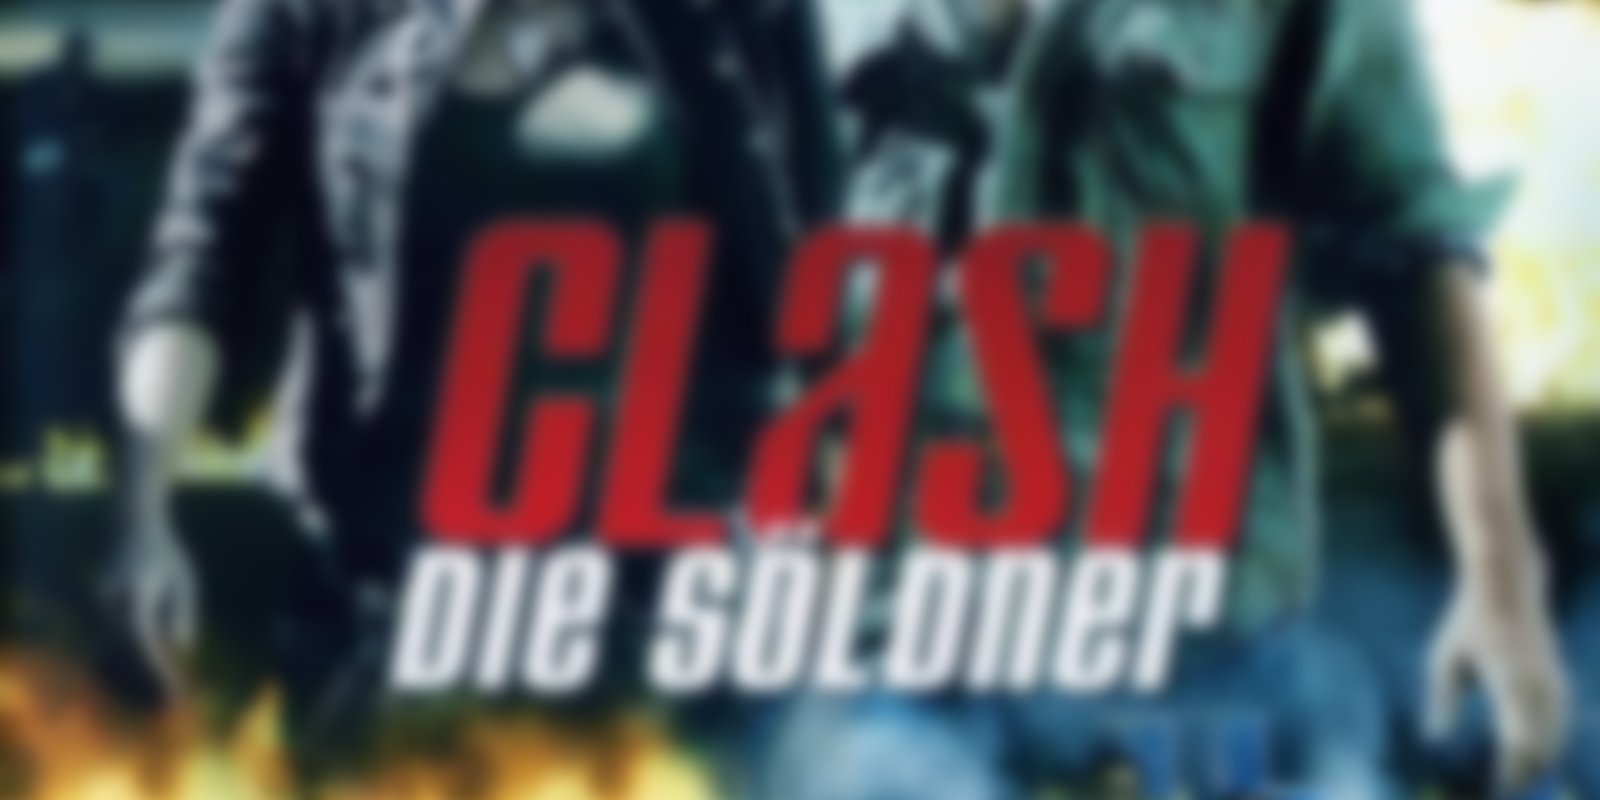 Clash - Die Söldner